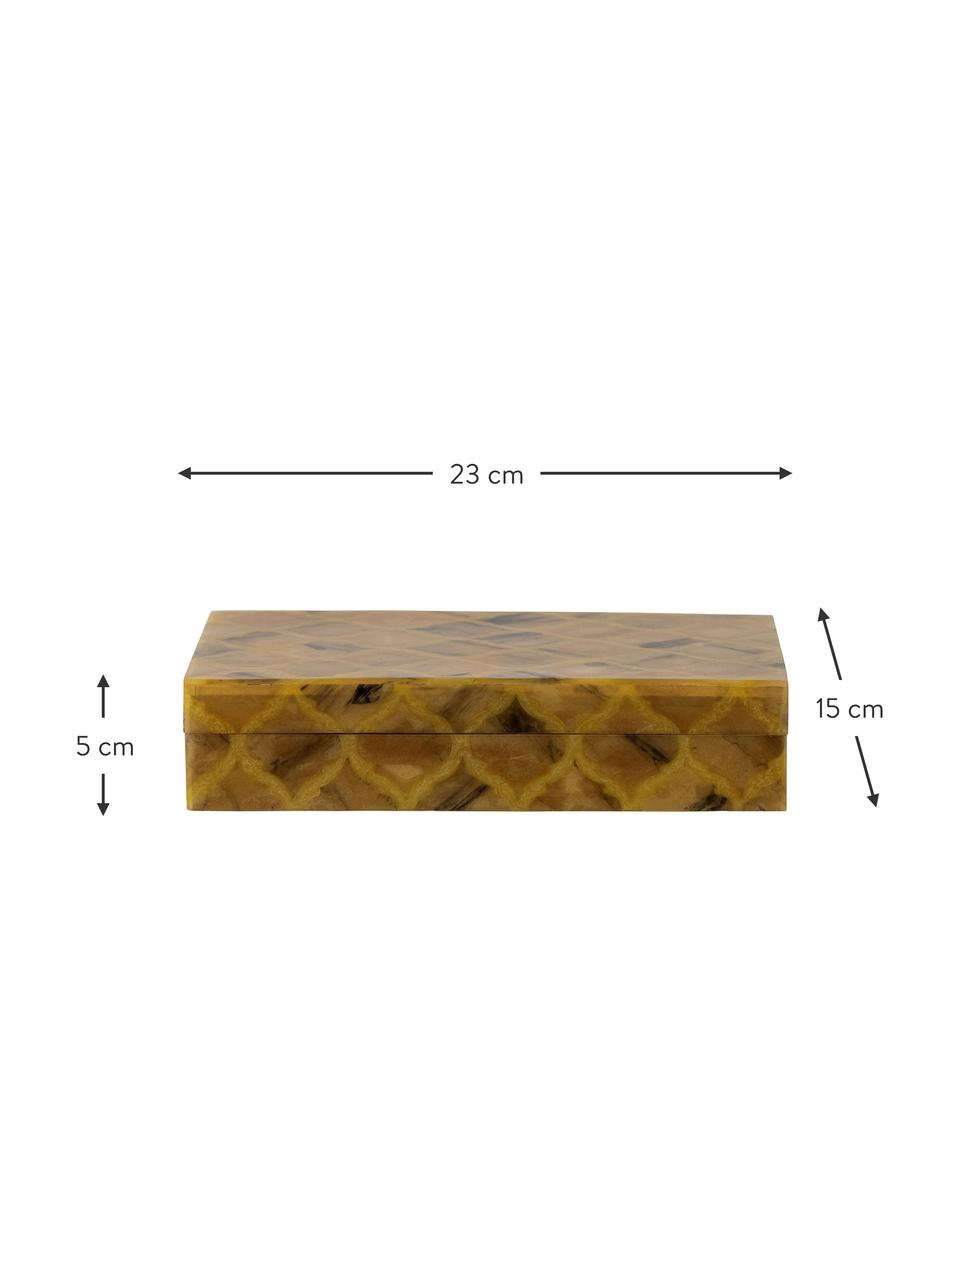 Šperkovnice Limon, Pryskyřice, dřevovláknitá deska střední hustoty (MDF), Jantarová, Š 23 cm, V 5 cm